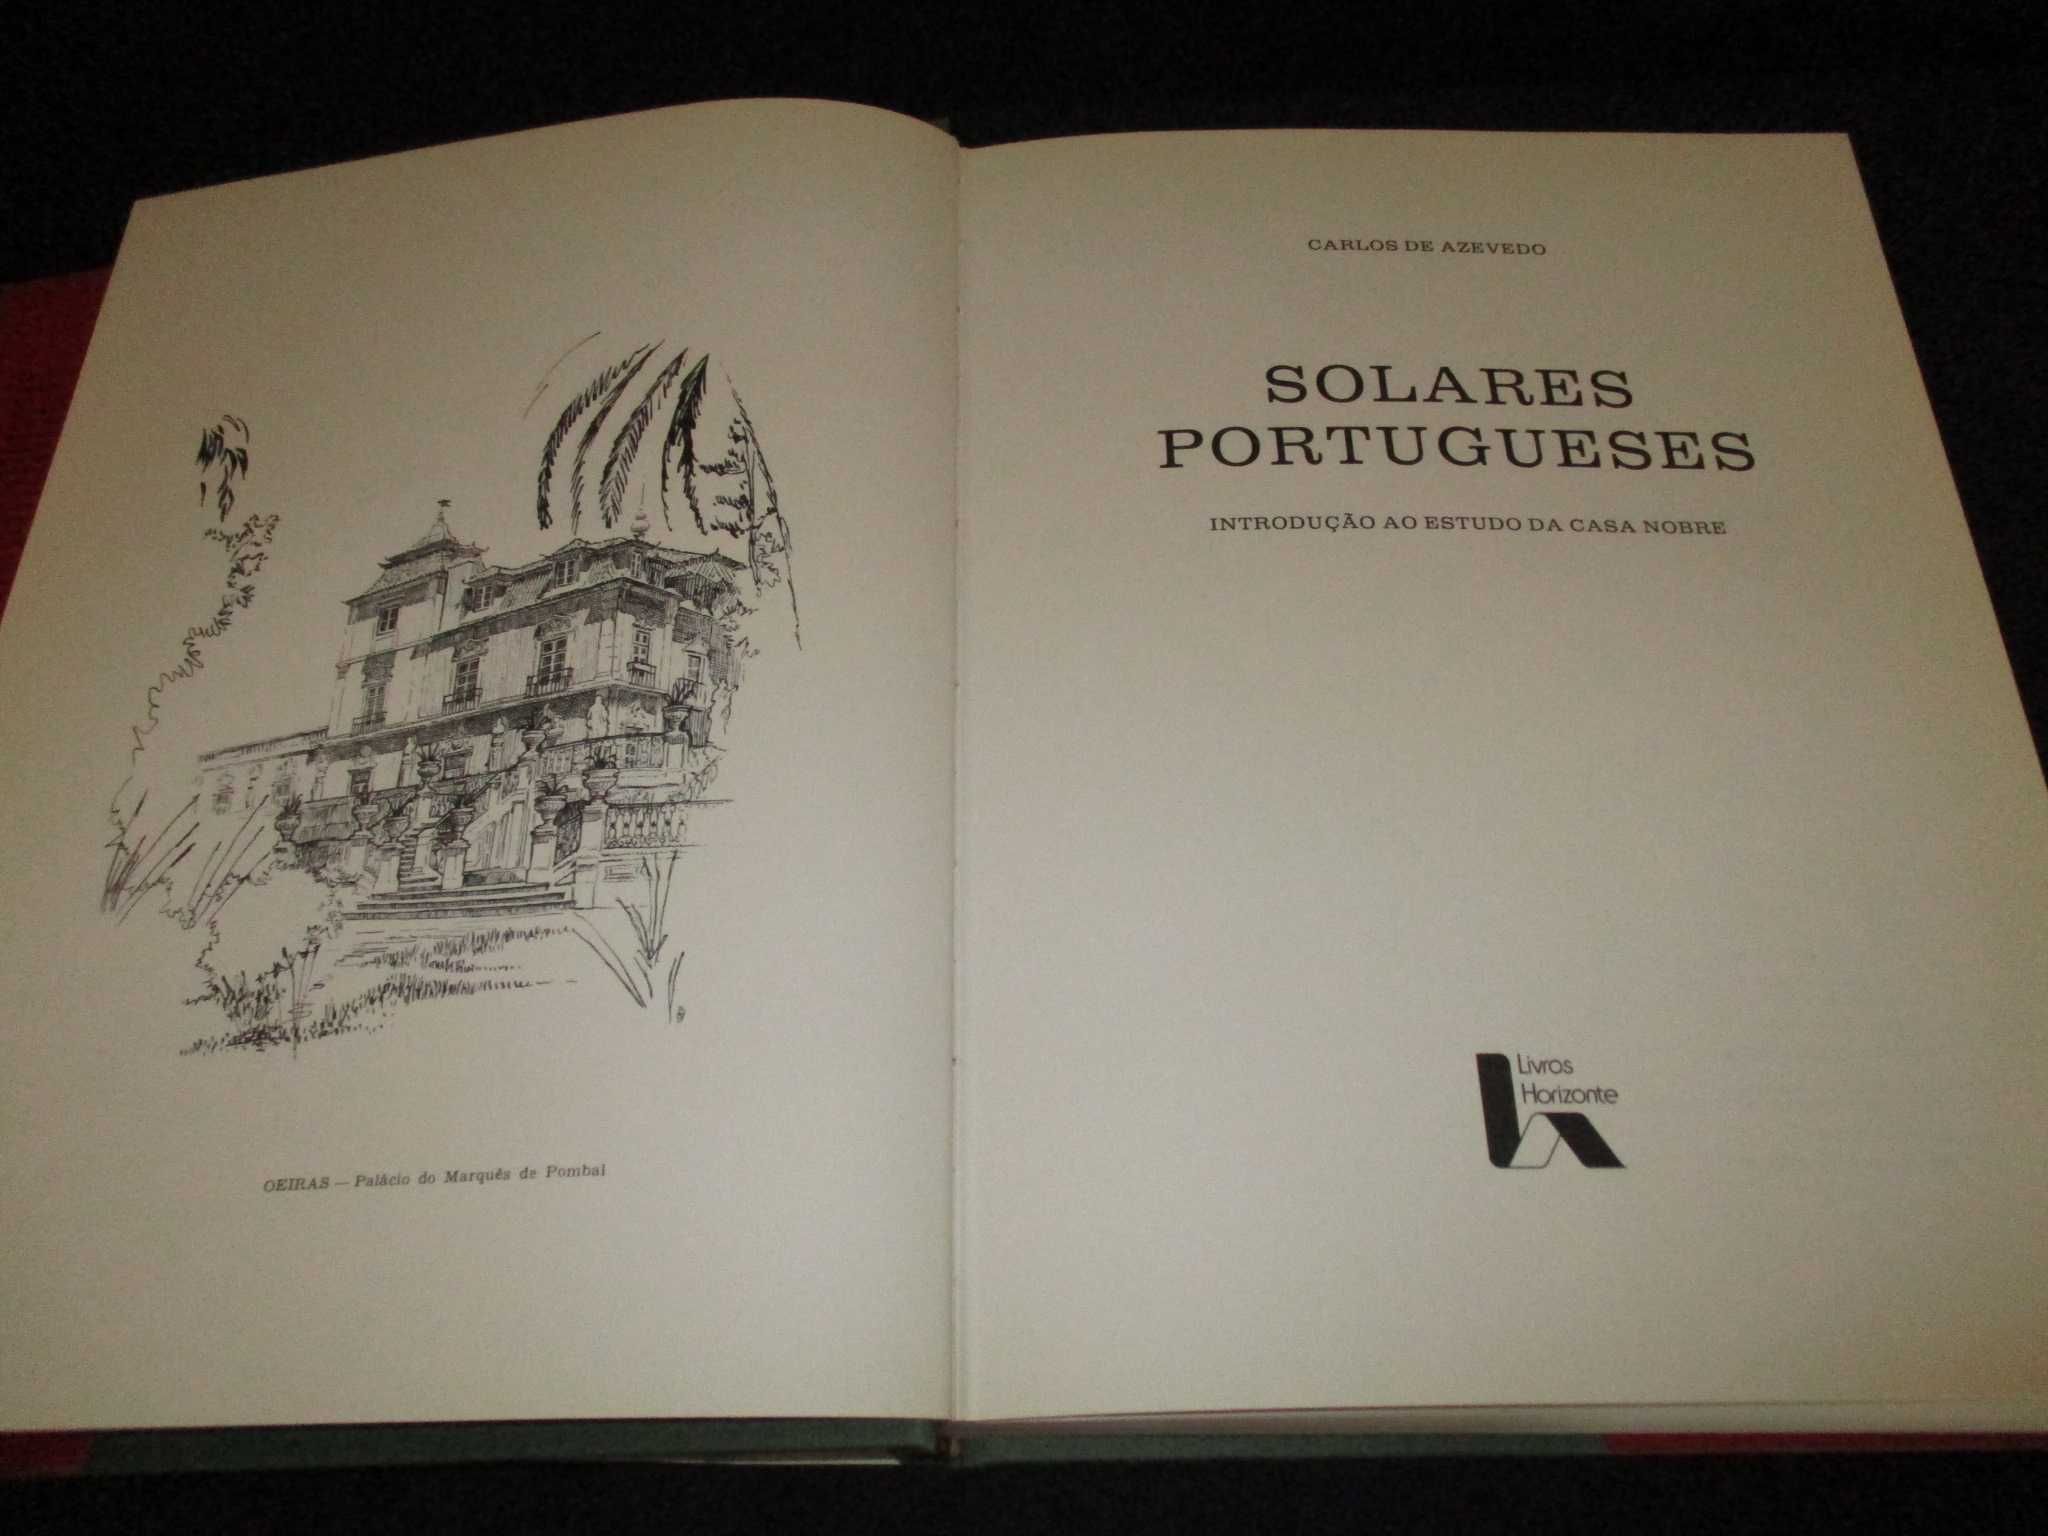 Livro Solares Portugueses Carlos de Azevedo Livros Horizonte 1988